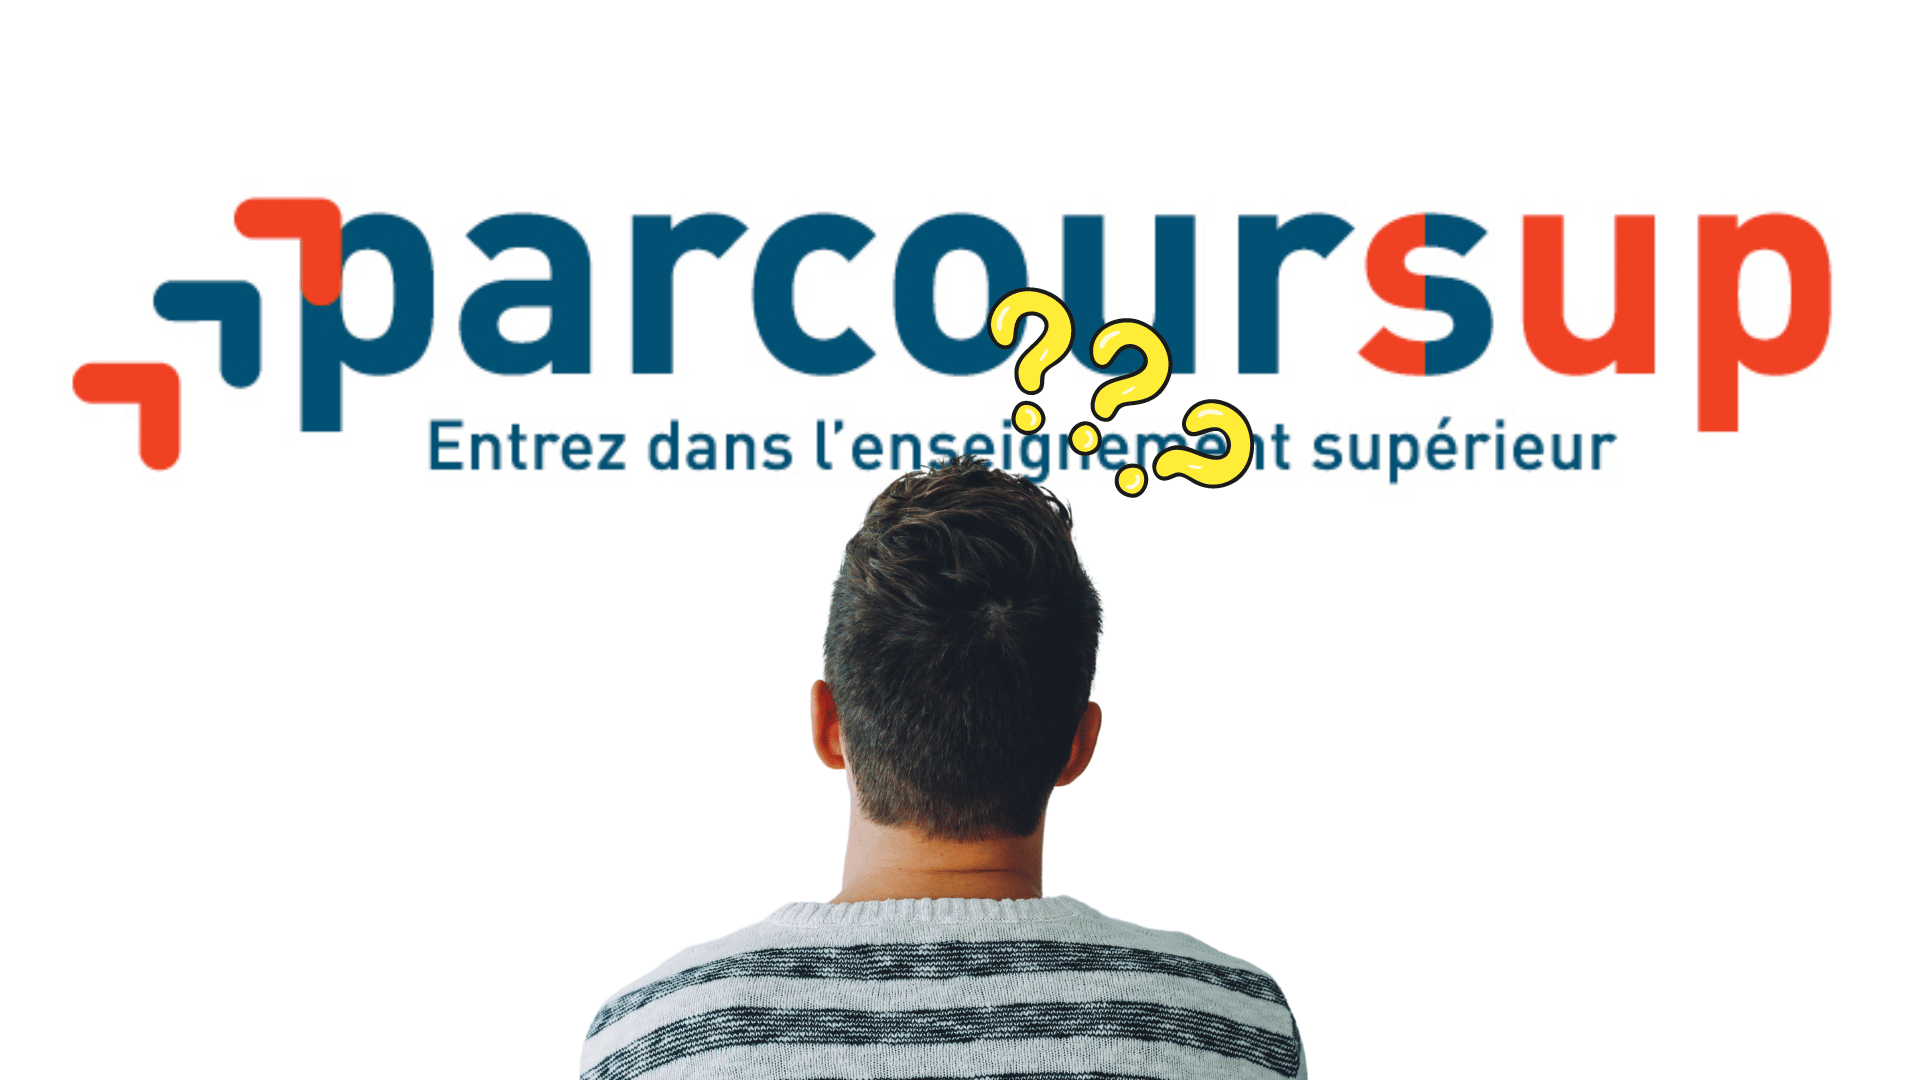 Featured image for “Qu’est-ce que Parcourssup ?”